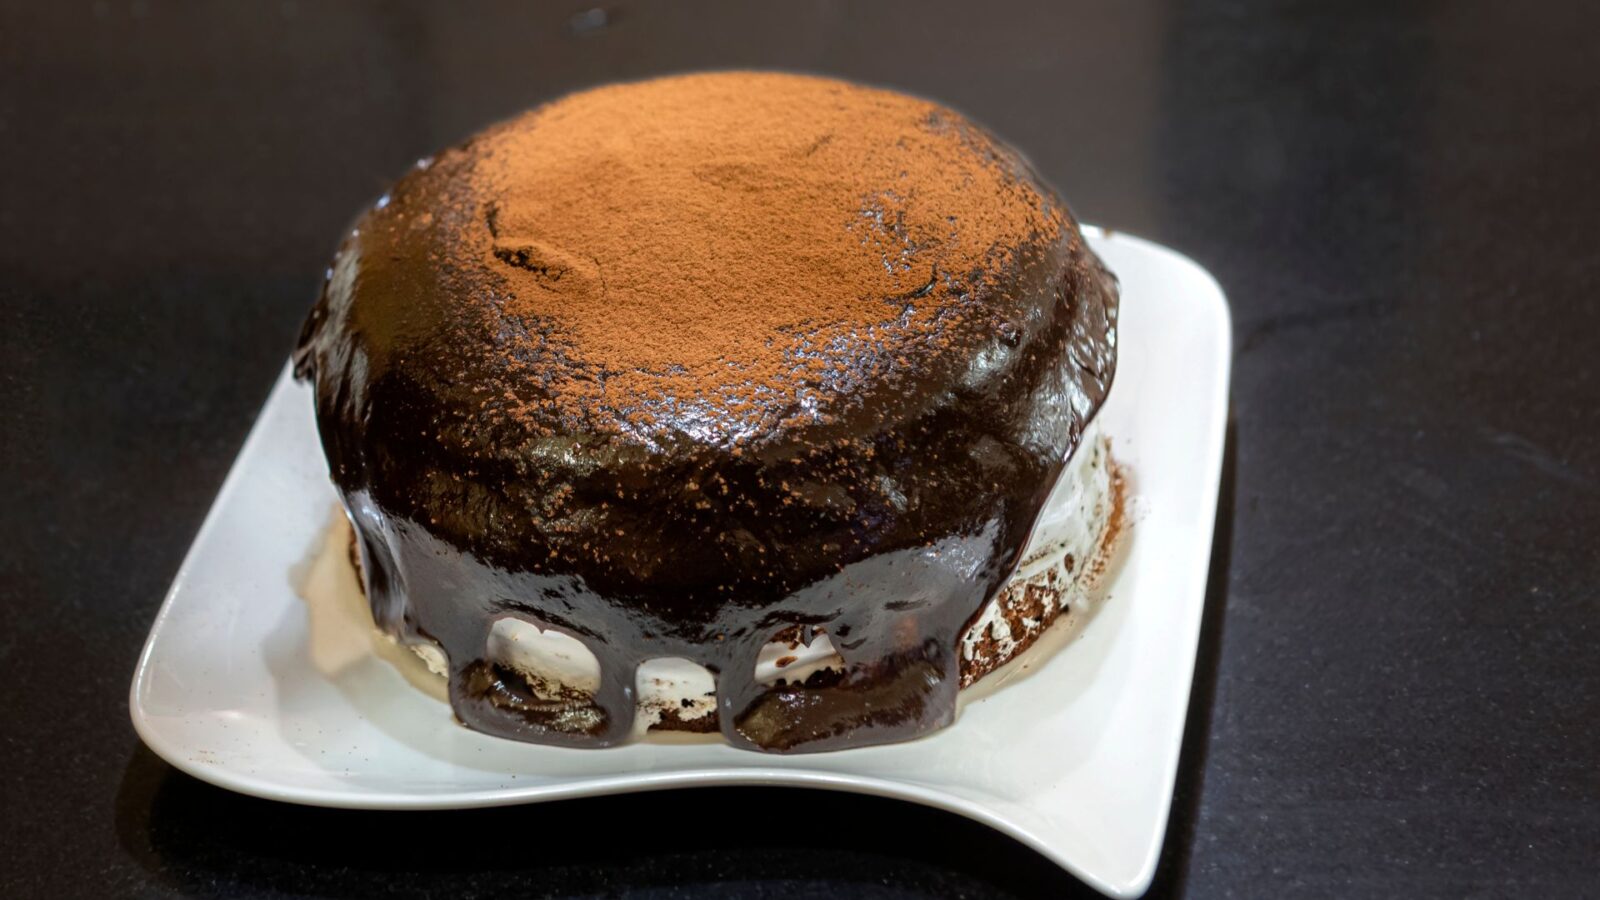 Como fazer bolo vulcão de chocolate